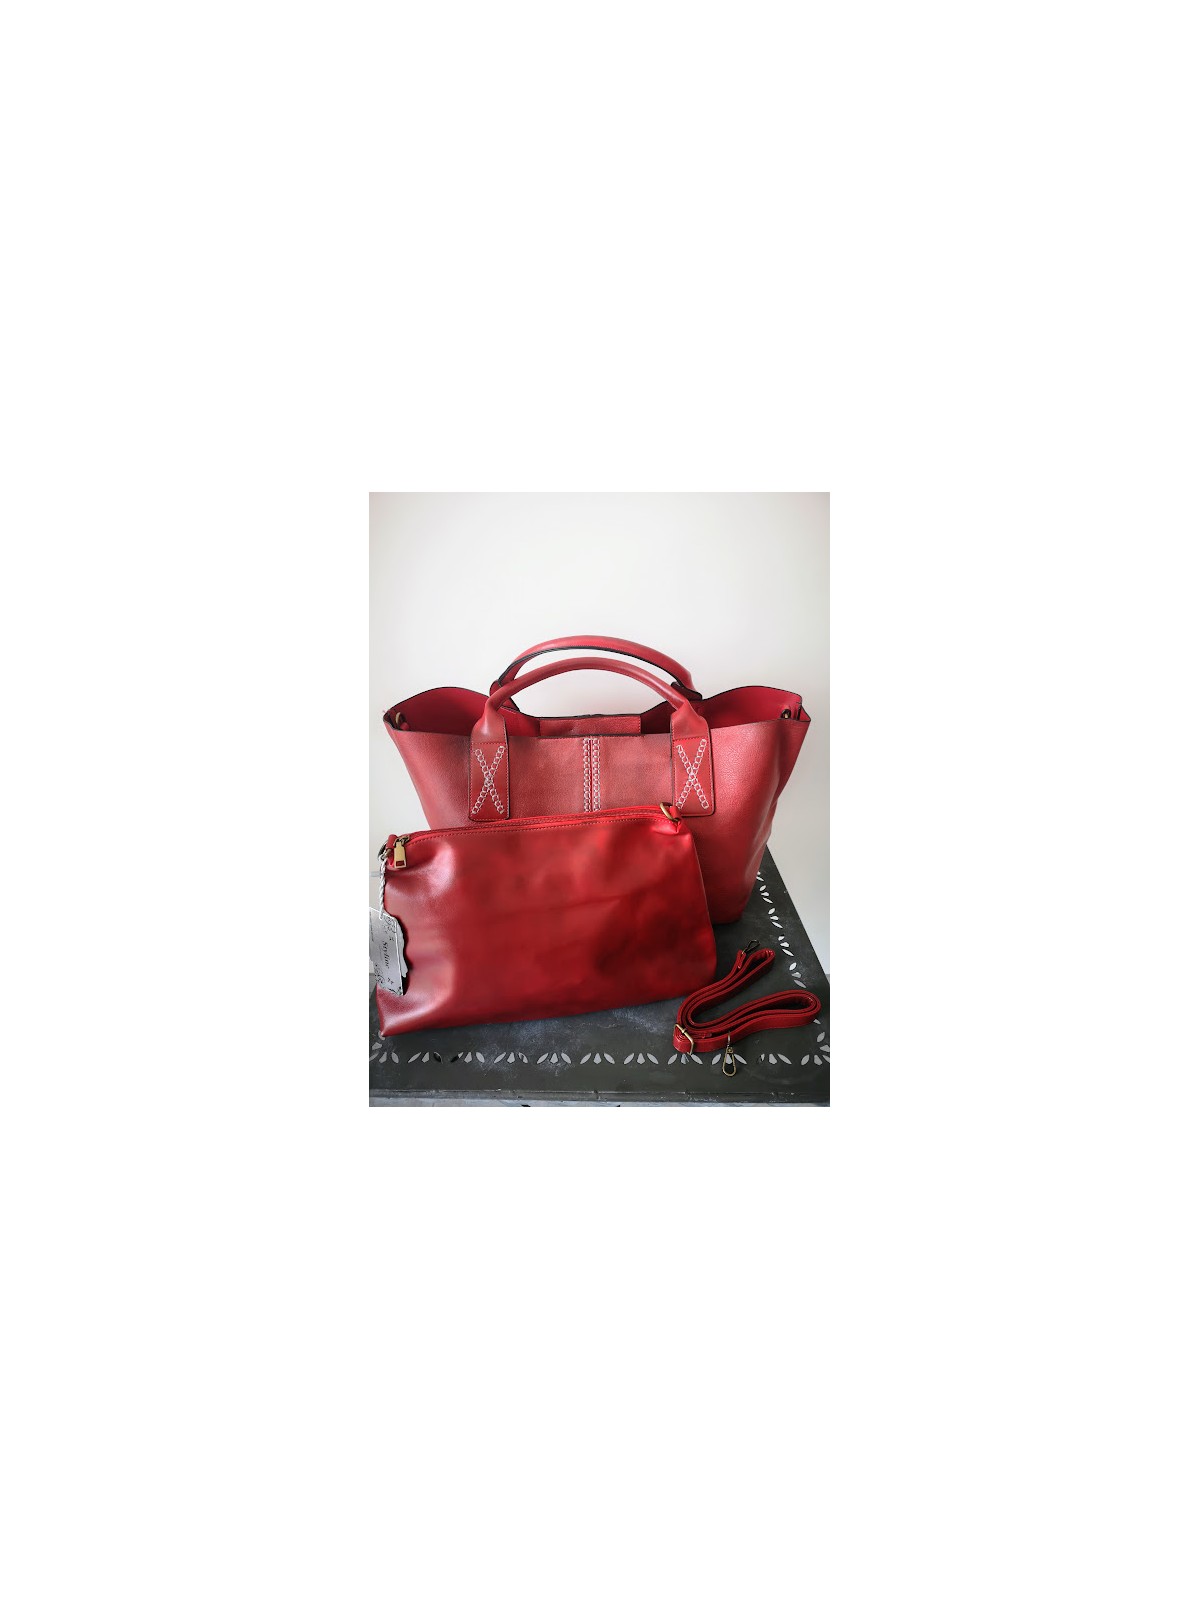 Sac rouge avec petites anses l 3 vue avec pochette l Tilleulmenthe mode boutique de vêtements femme en ligne